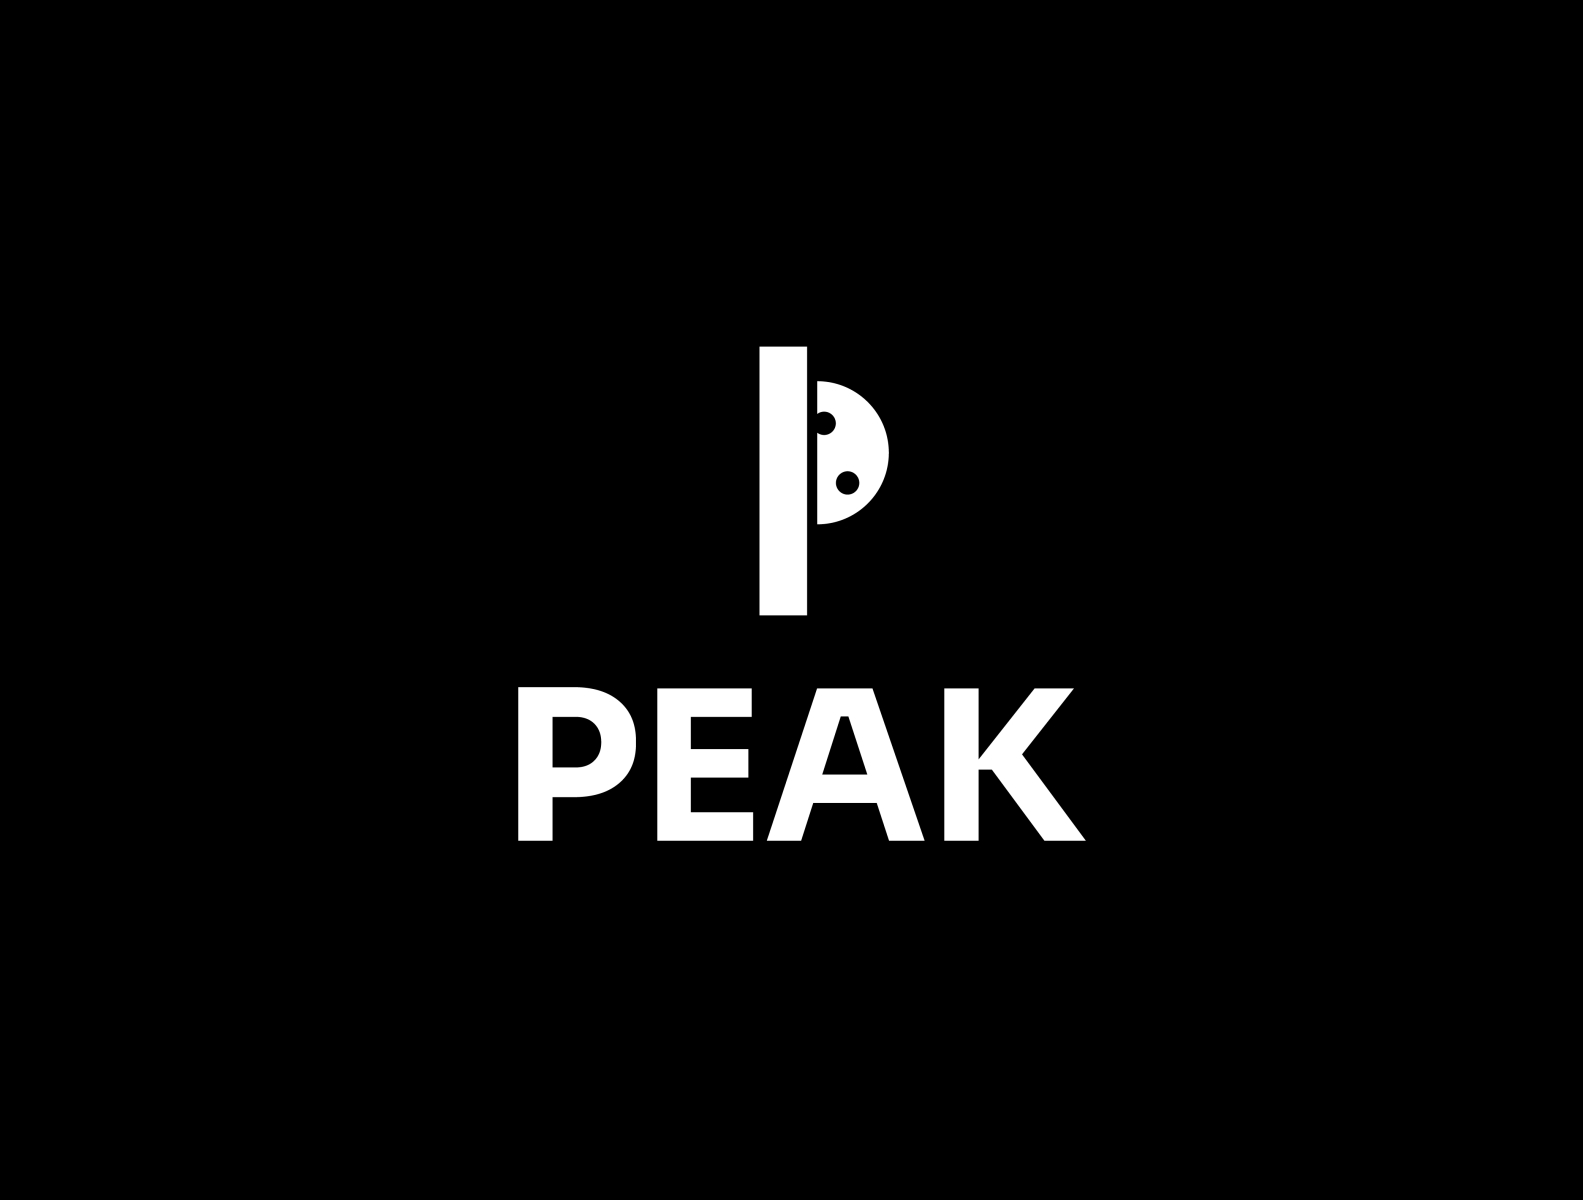 PEAK by Artify on Dribbble